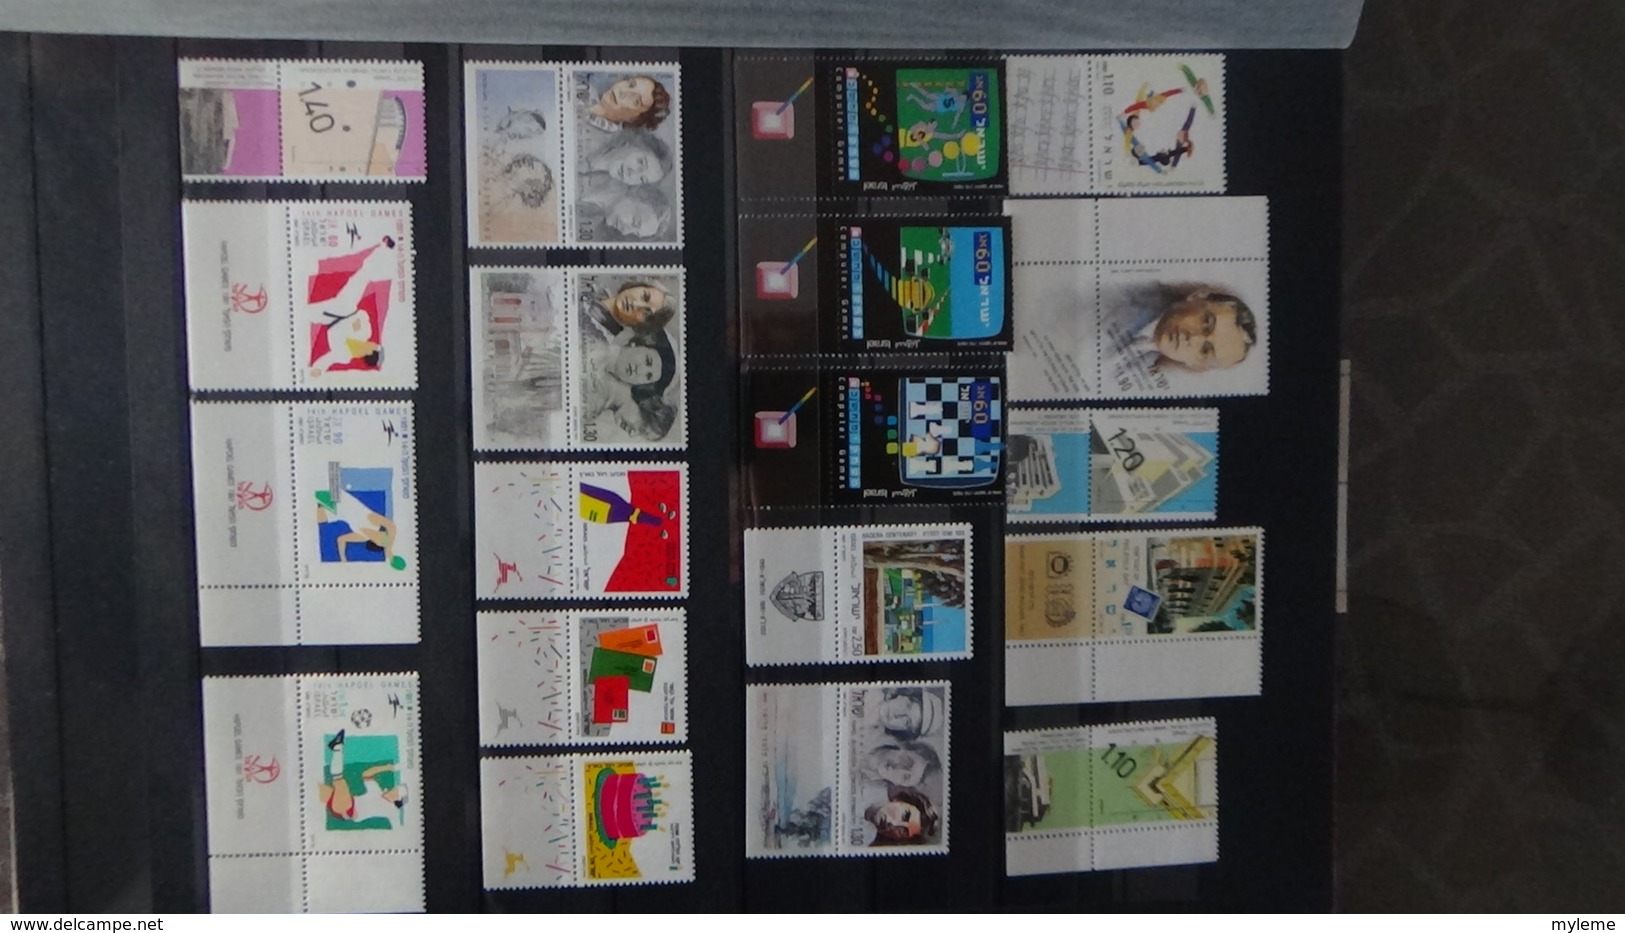 Belle collection d'Israël timbres, blocs, carnets tous **. Côte très sympa !!!